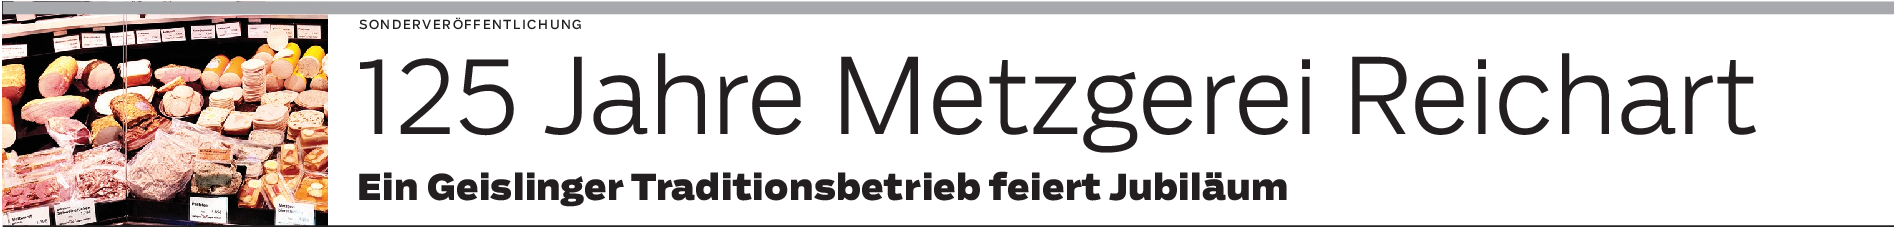 Metzgerei Reichart in Geislingen: Über Generationen Treue zum Handwerk